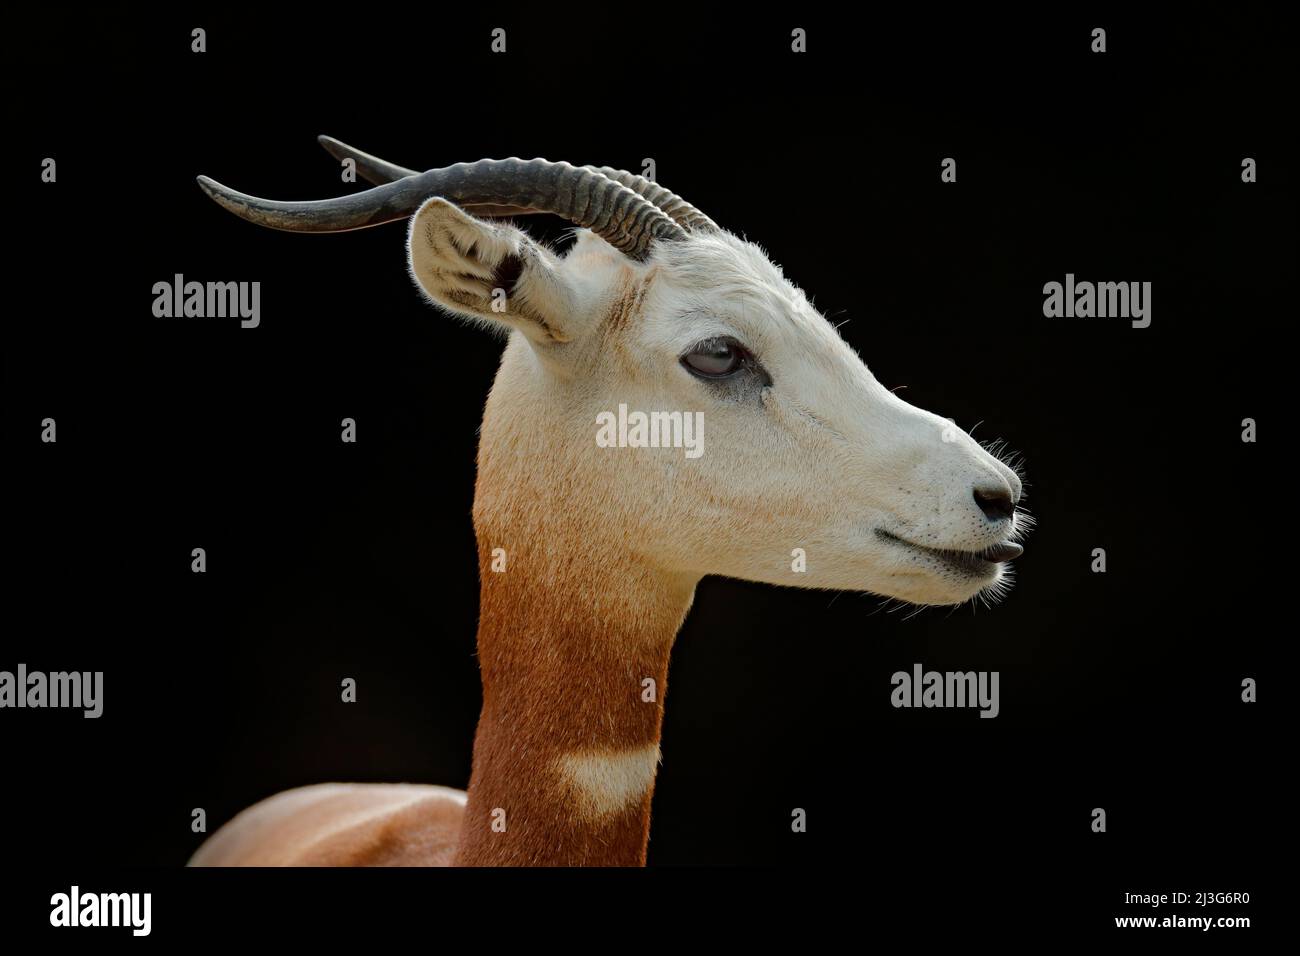 Dama Gazelle, Addra Gazelle oder Mhorr Gazelle, Nanger dama, Detail Portrait mit Horn. Tier aus Afrika. Nahaufnahme des Gesichts. Der Gazelle. Wild Stockfoto